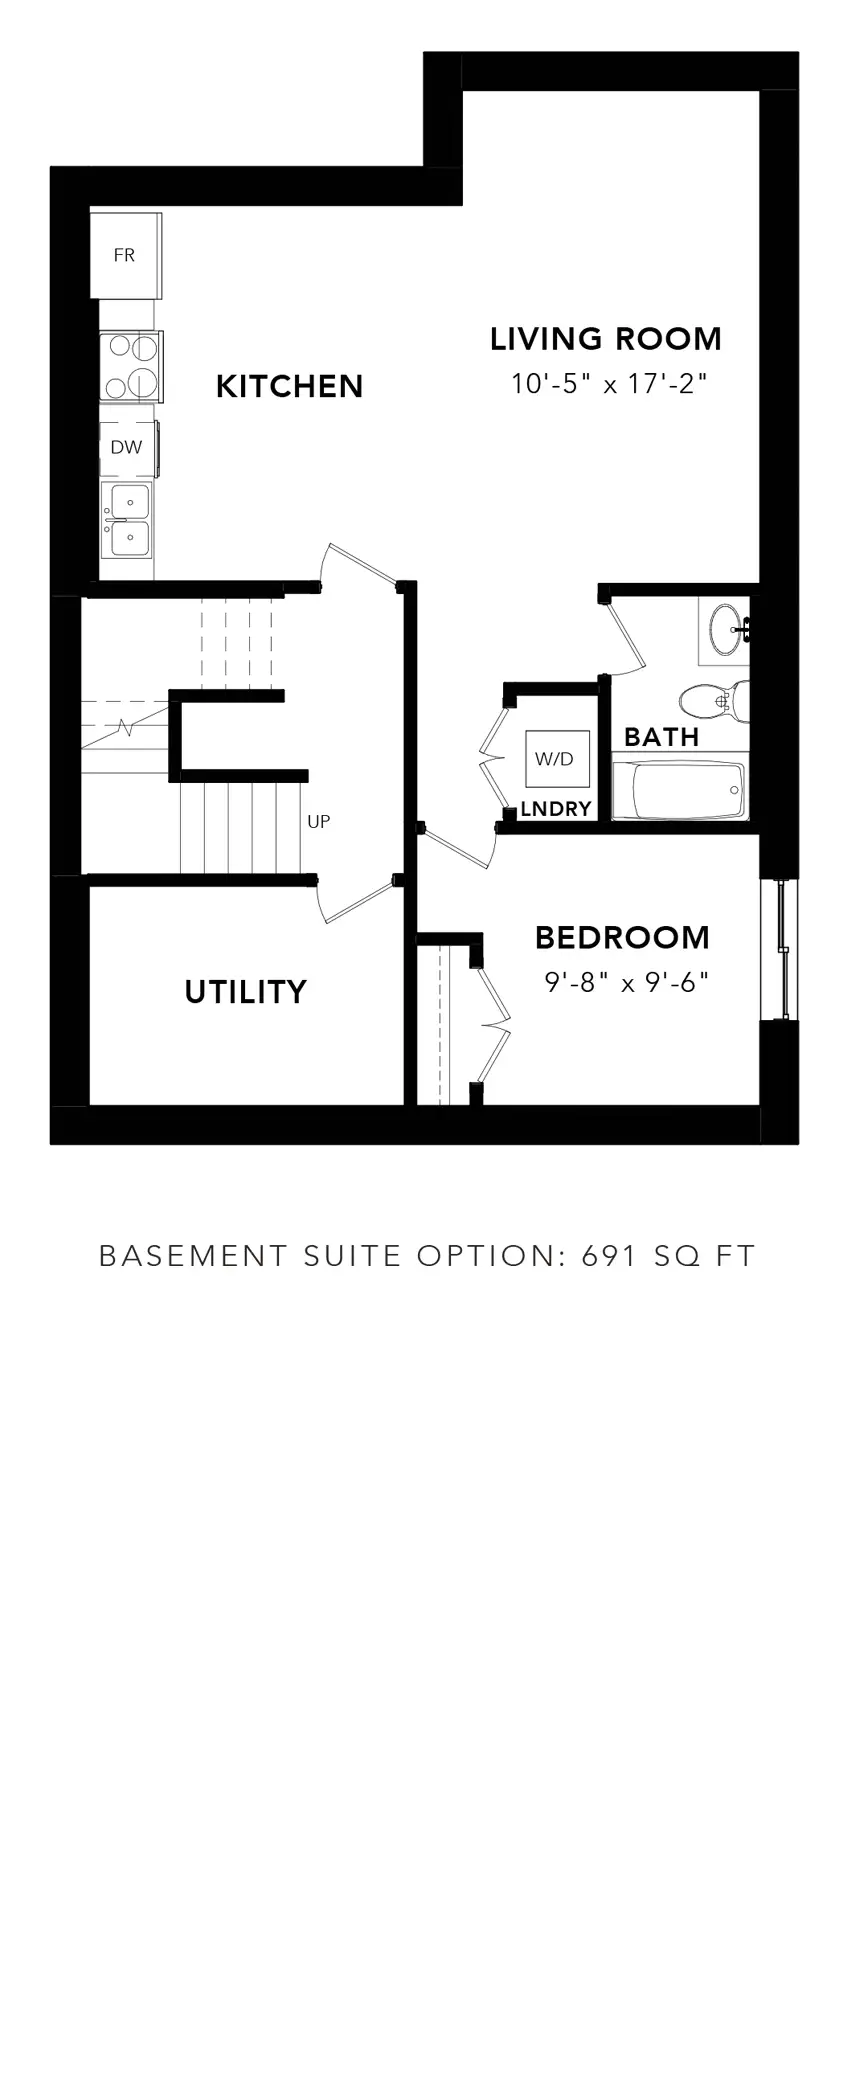 Western Cedar Basement Suite Option